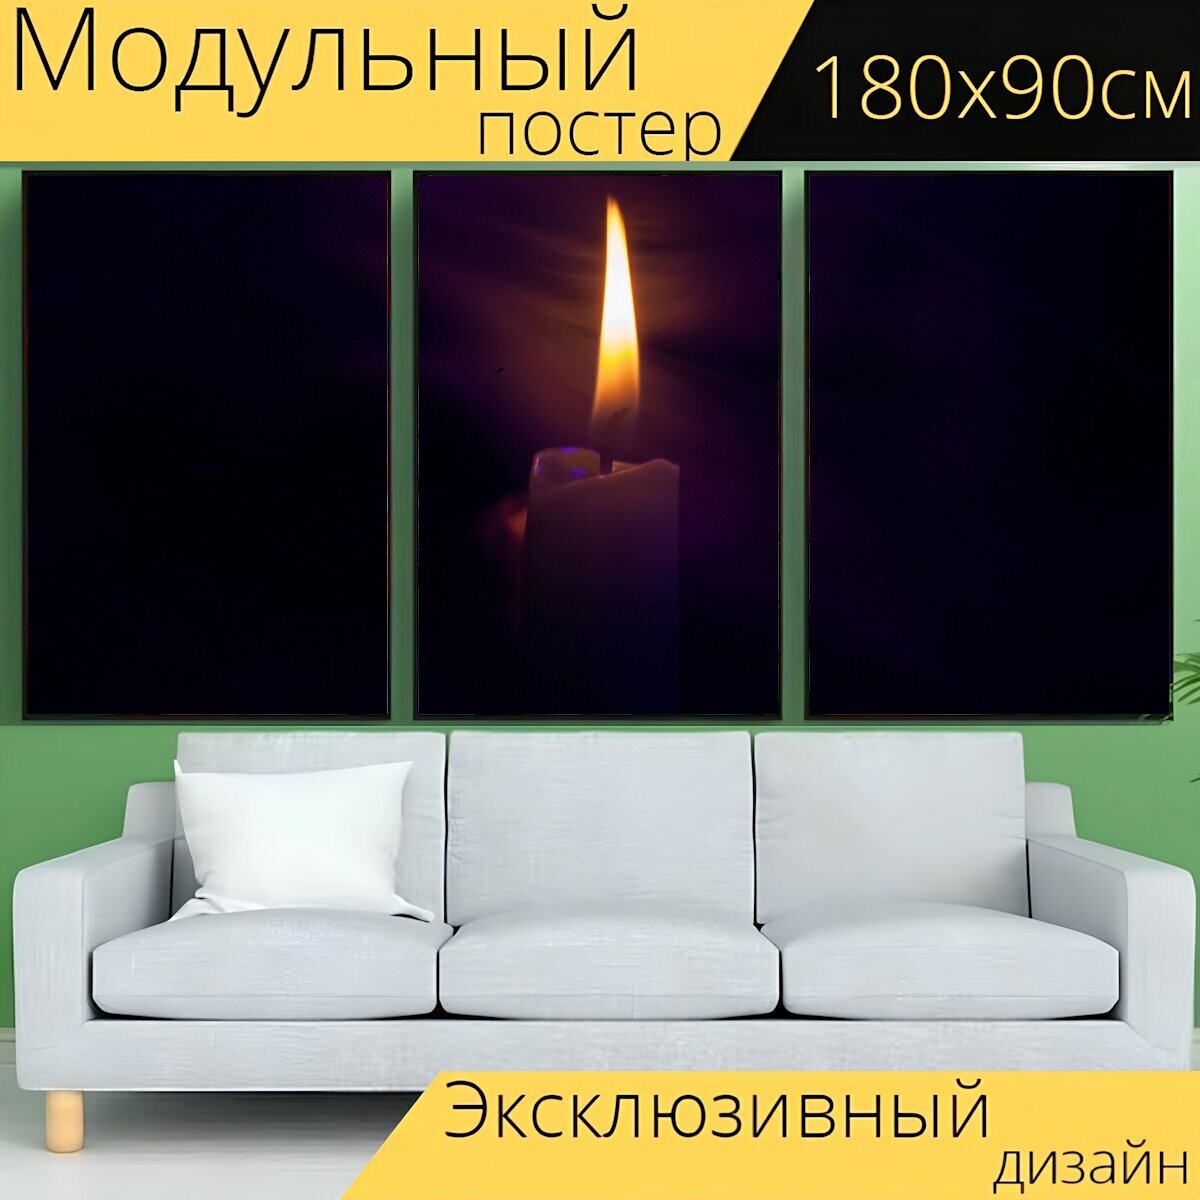 Модульный постер "Свеча, пасхальный, свечи" 180 x 90 см. для интерьера